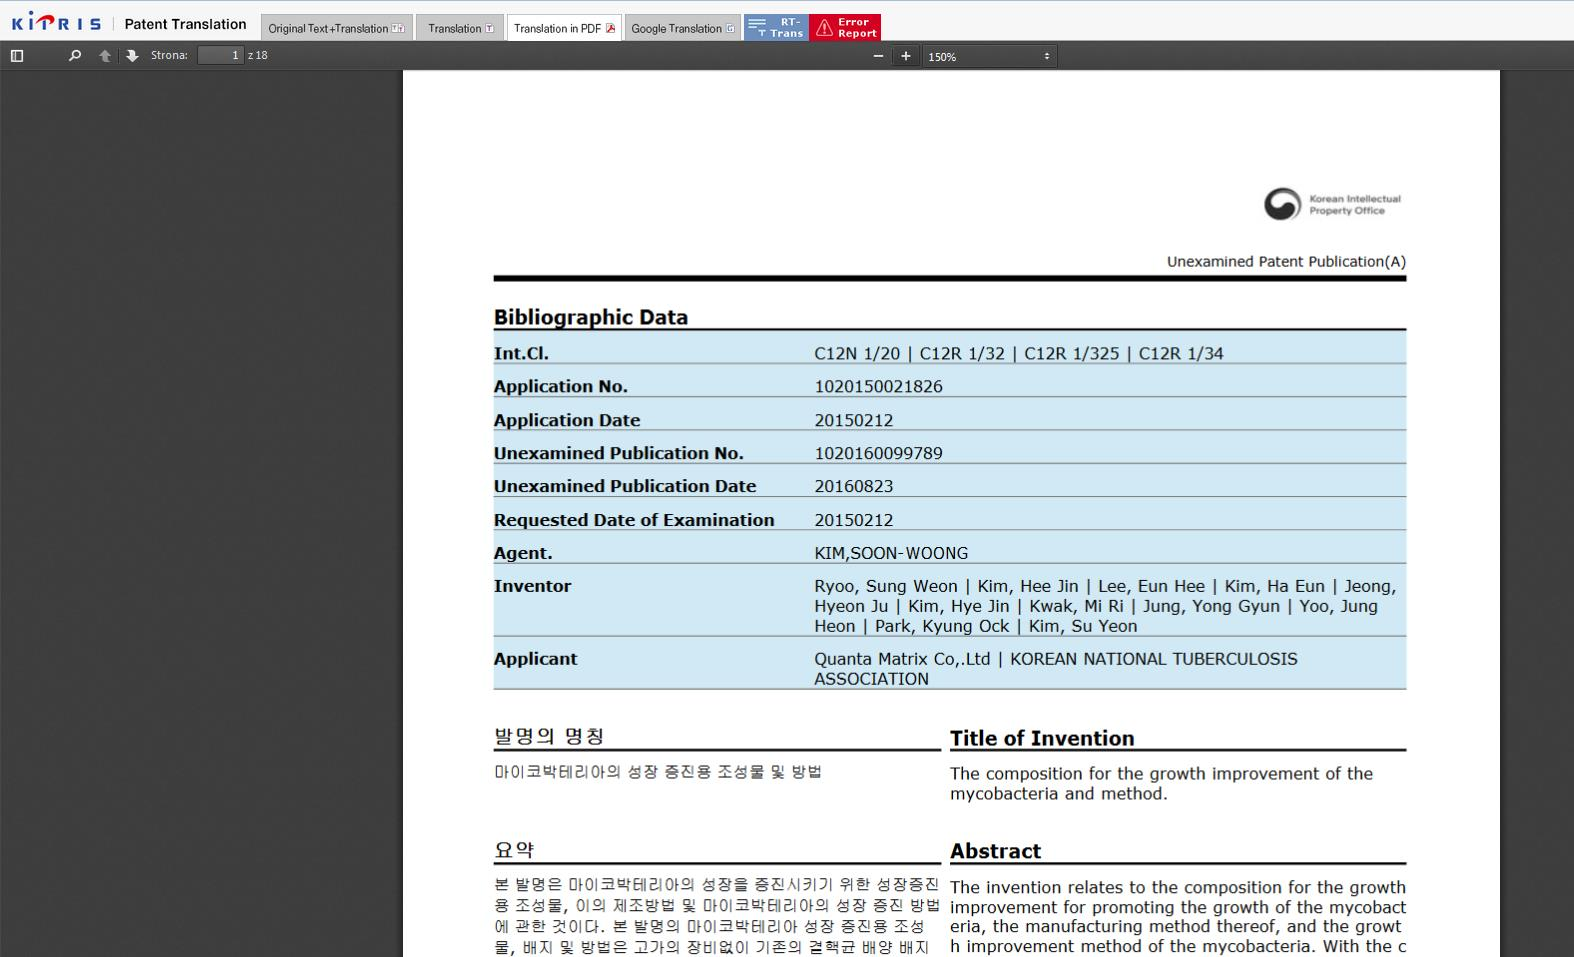 Strona Narodowego Urzędu Własności Intelektualnej Korei (KIPRIS) [http:/eng.